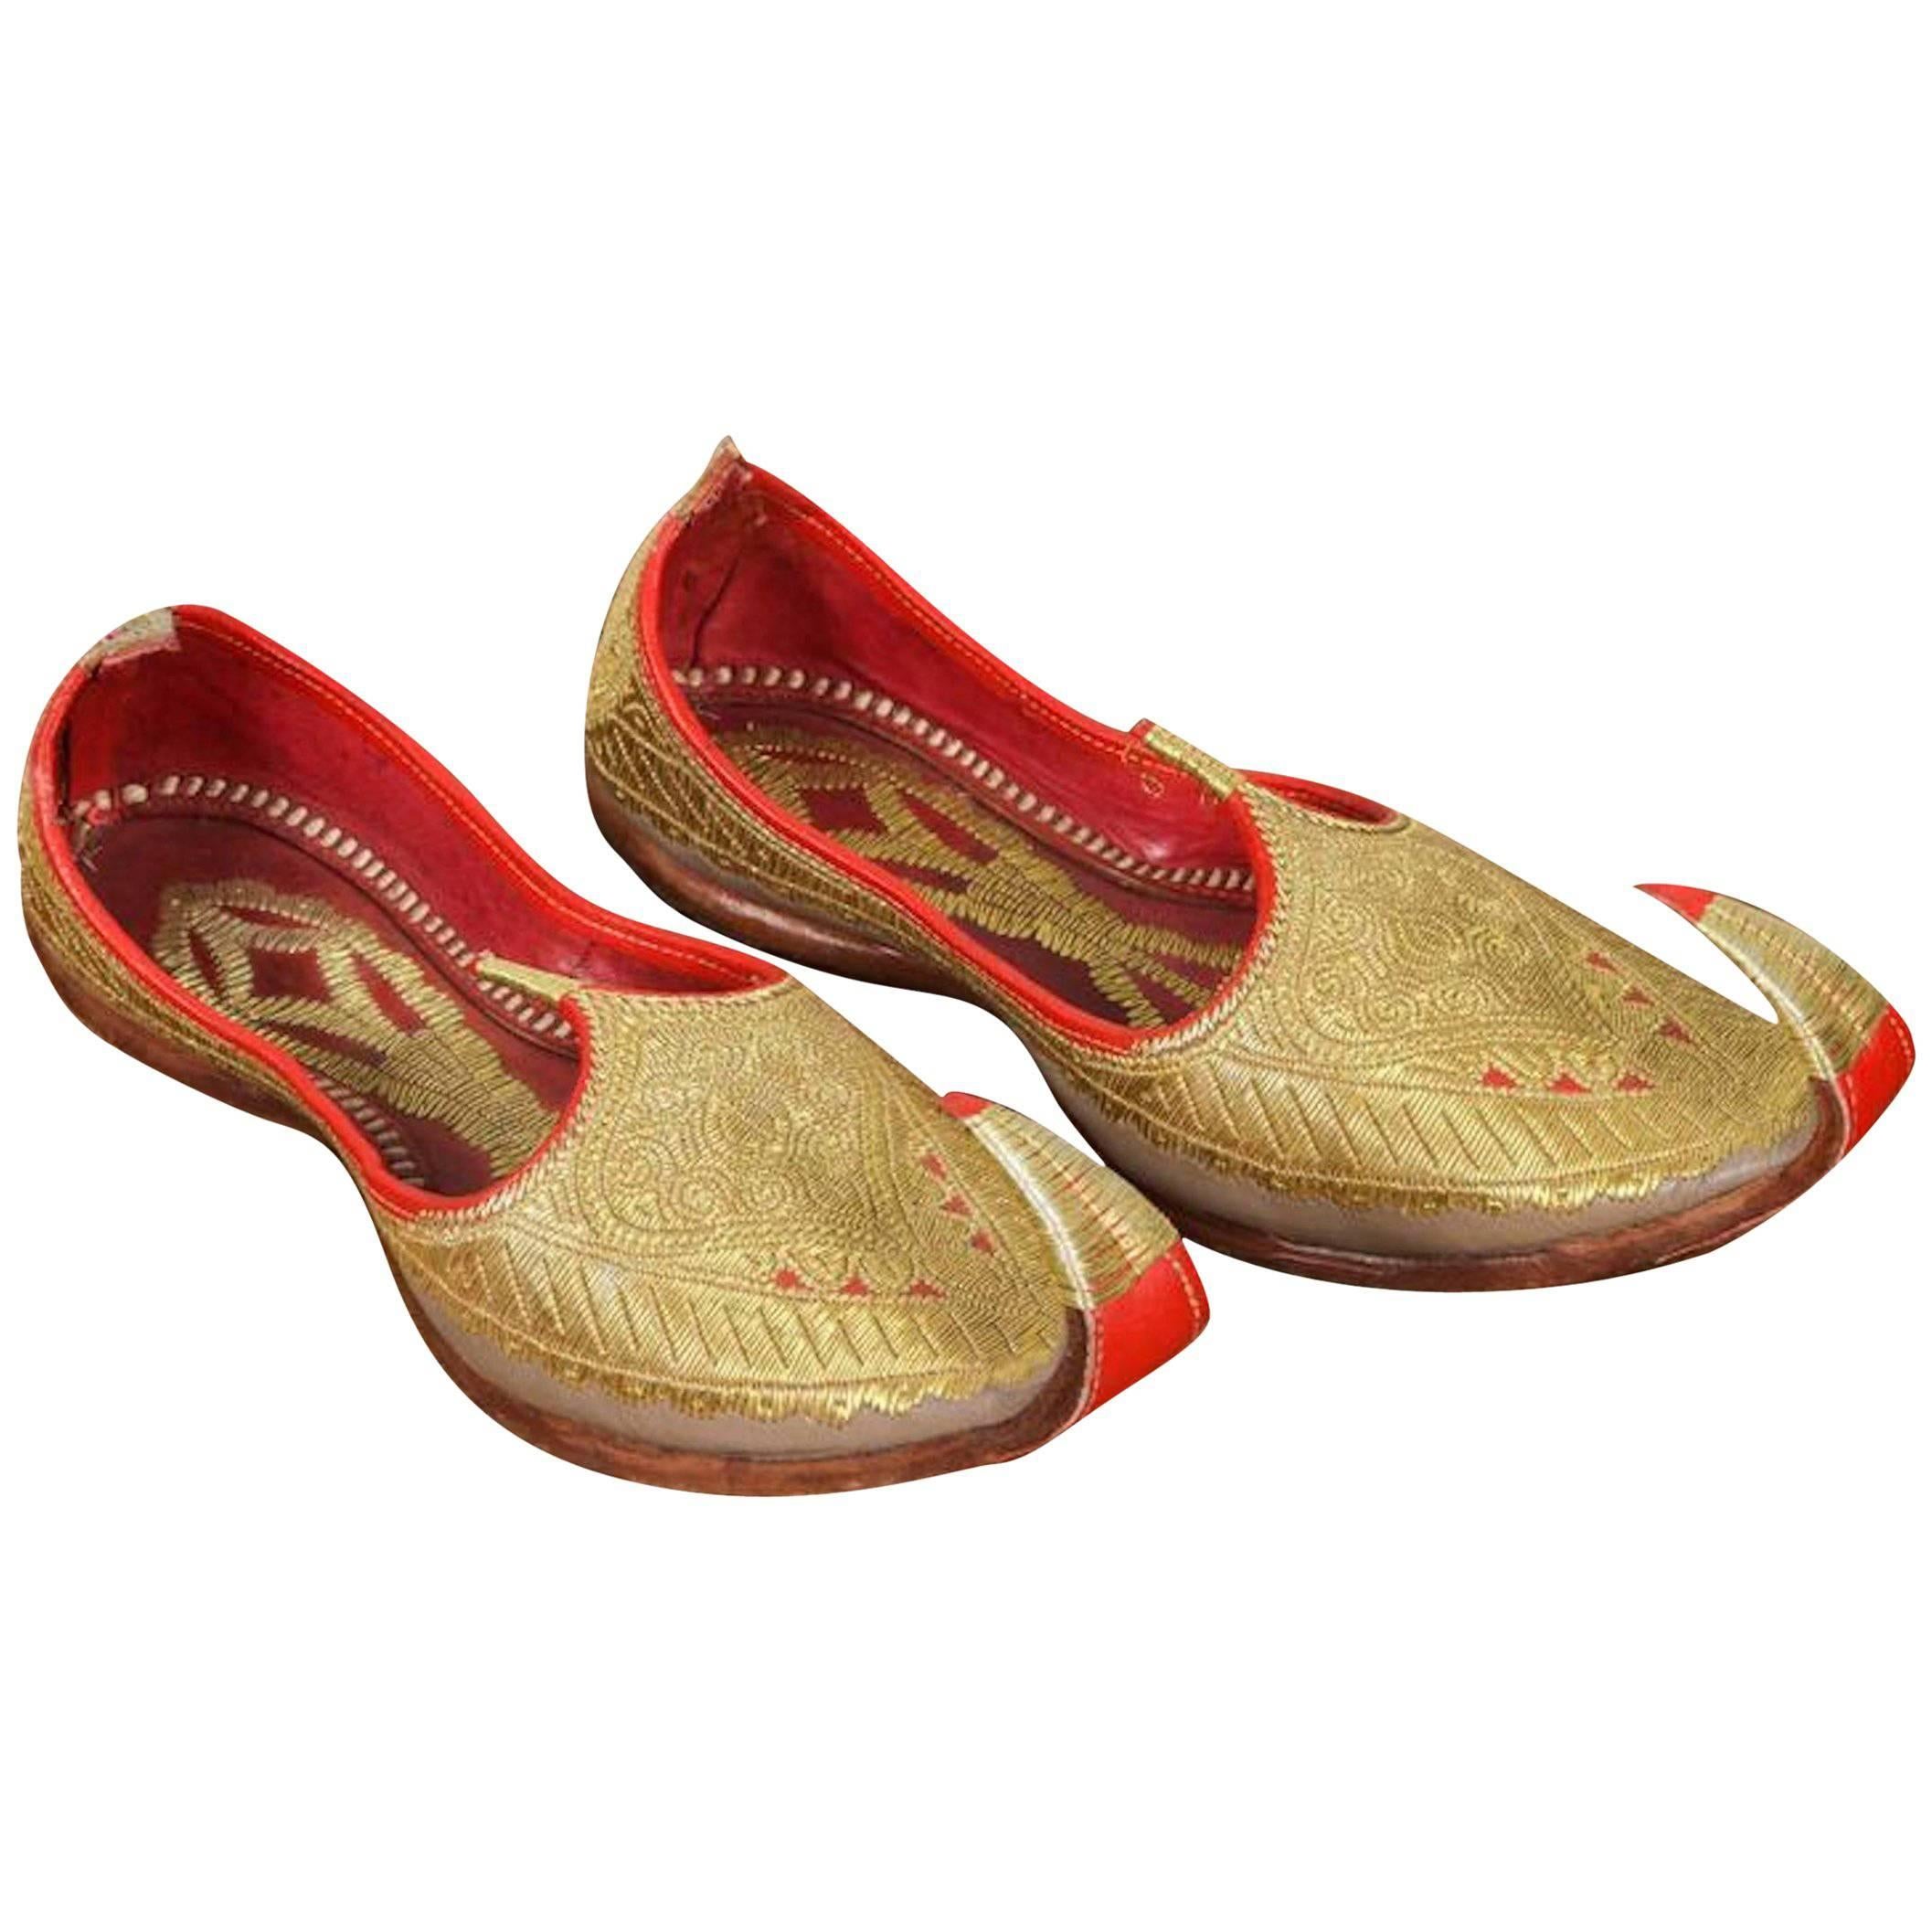 Mughal-Schuhe aus maurischem Gold und rotem besticktem Leder